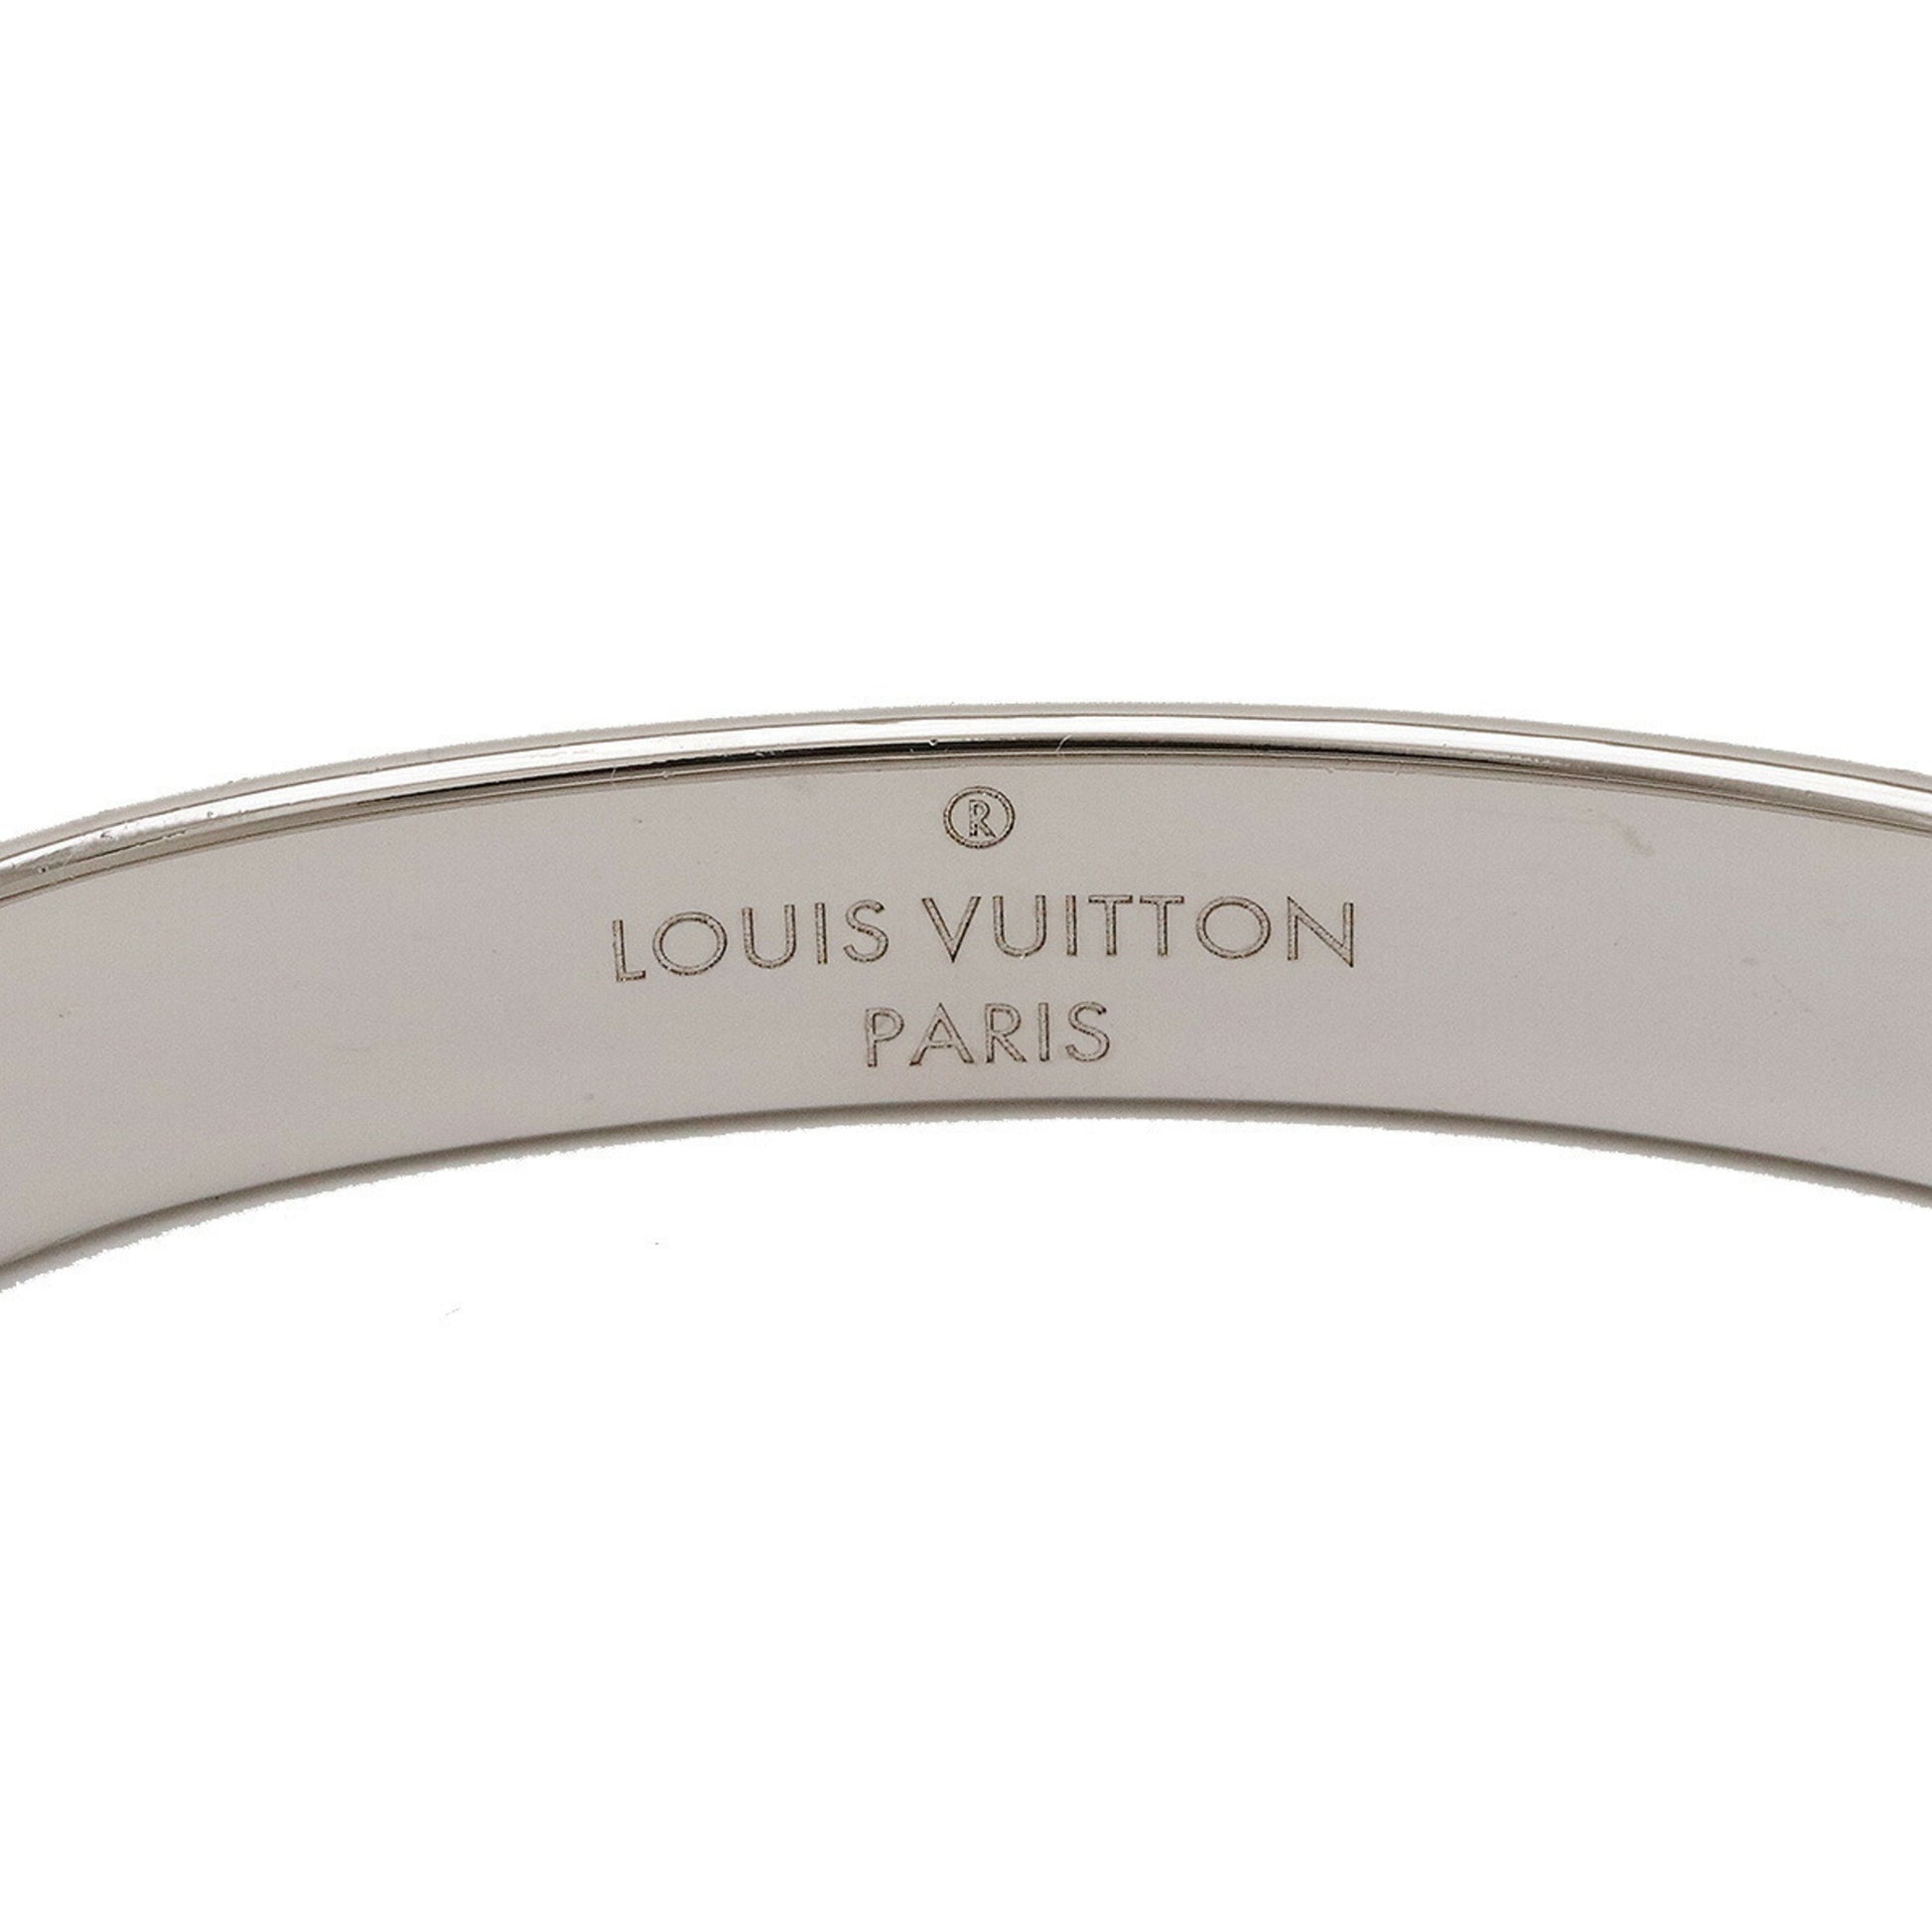 Shop Louis Vuitton Nanogram cuff (M00252) by SolidConnection